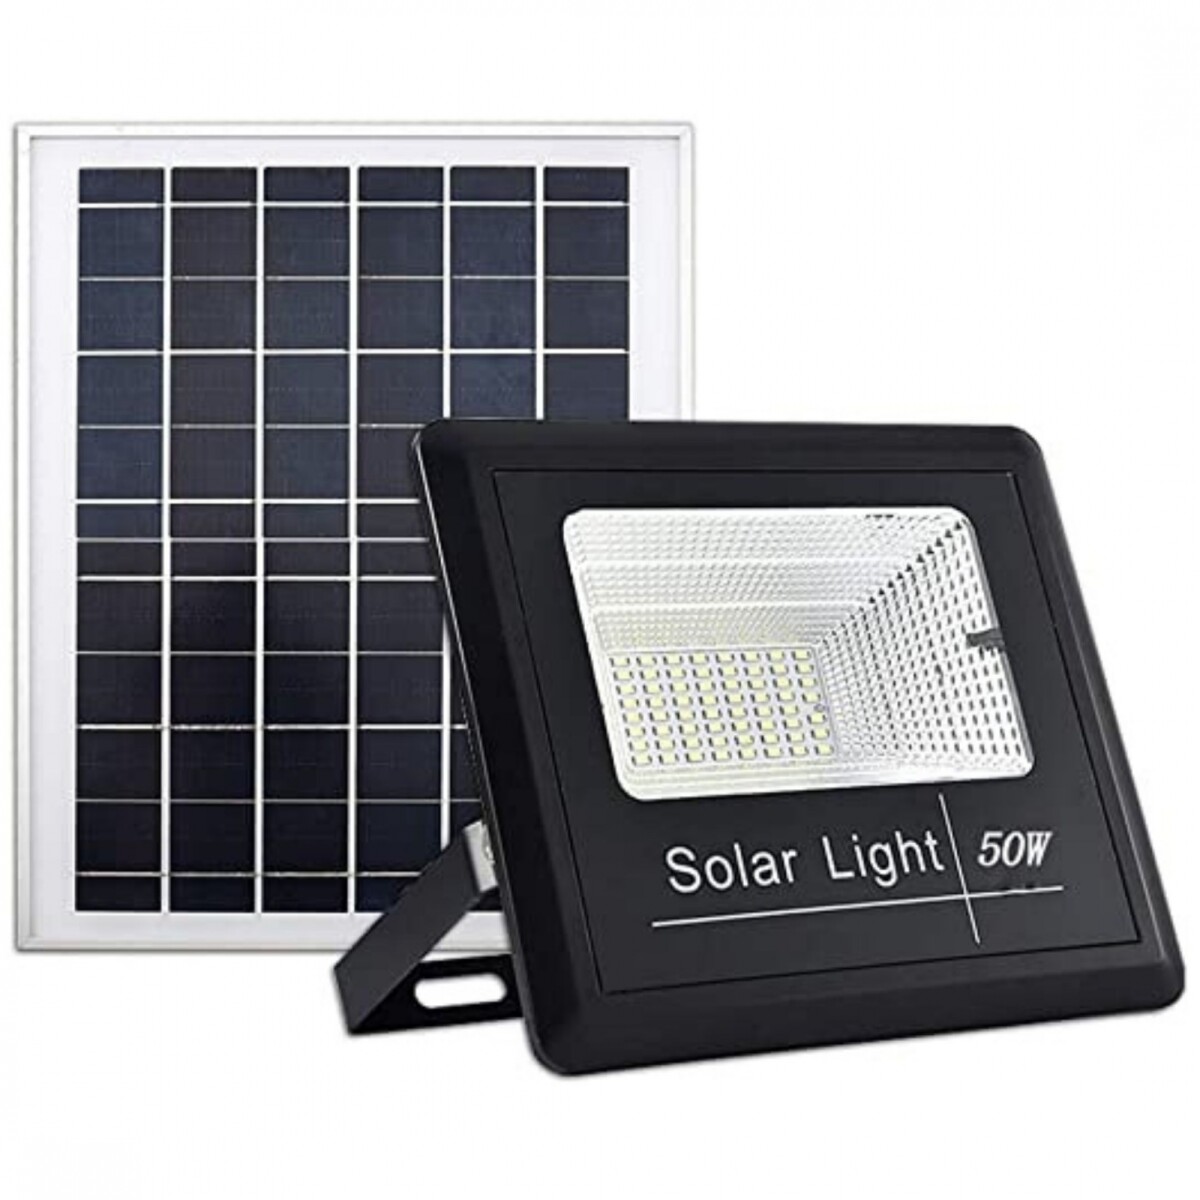 Foco Led Reflector 50W Solar, con fotocélula y control remoto 